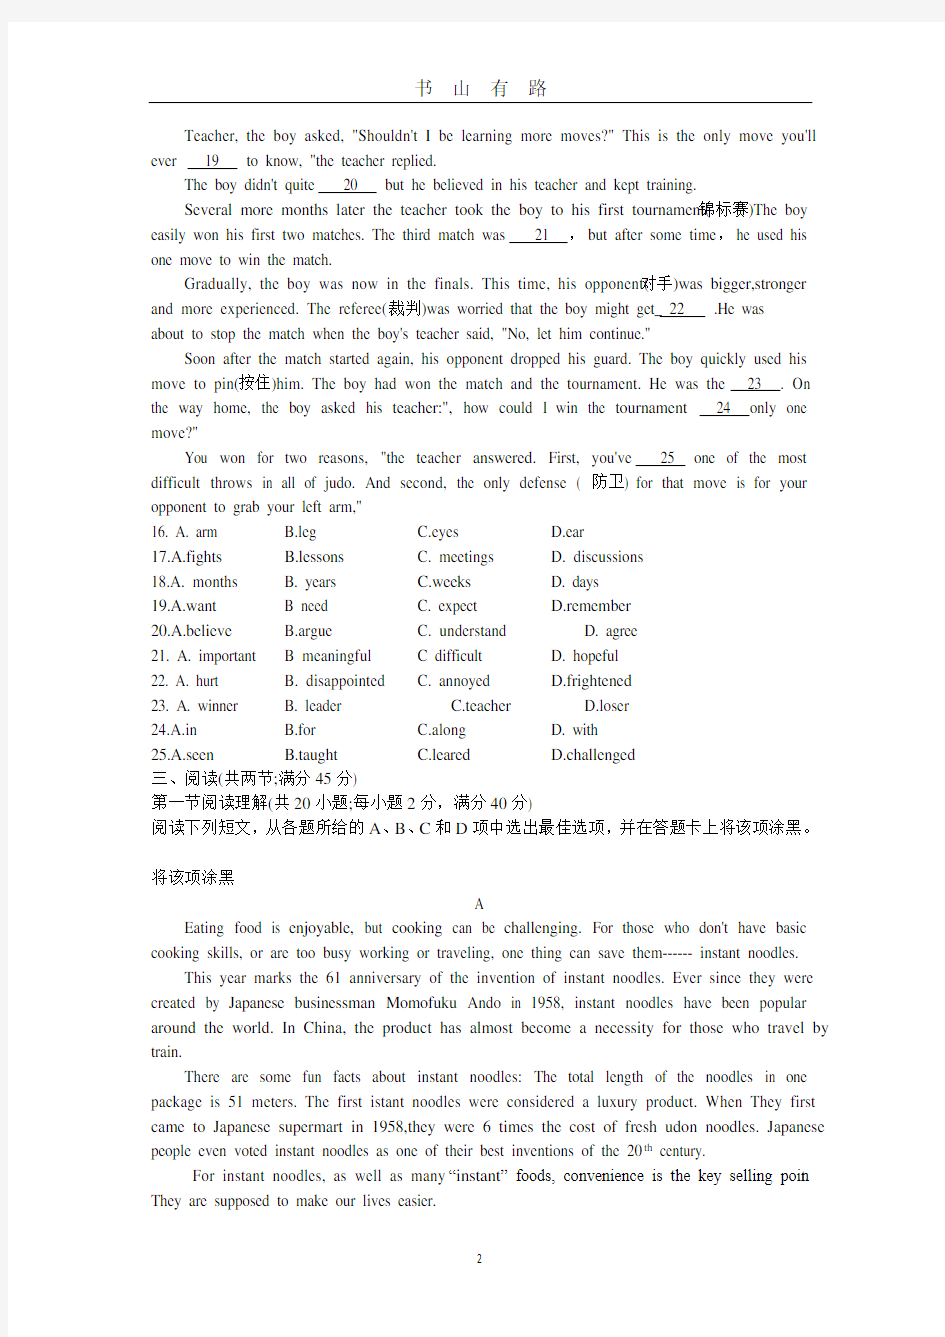 2020广州初三英语中考模拟试卷PDF.pdf